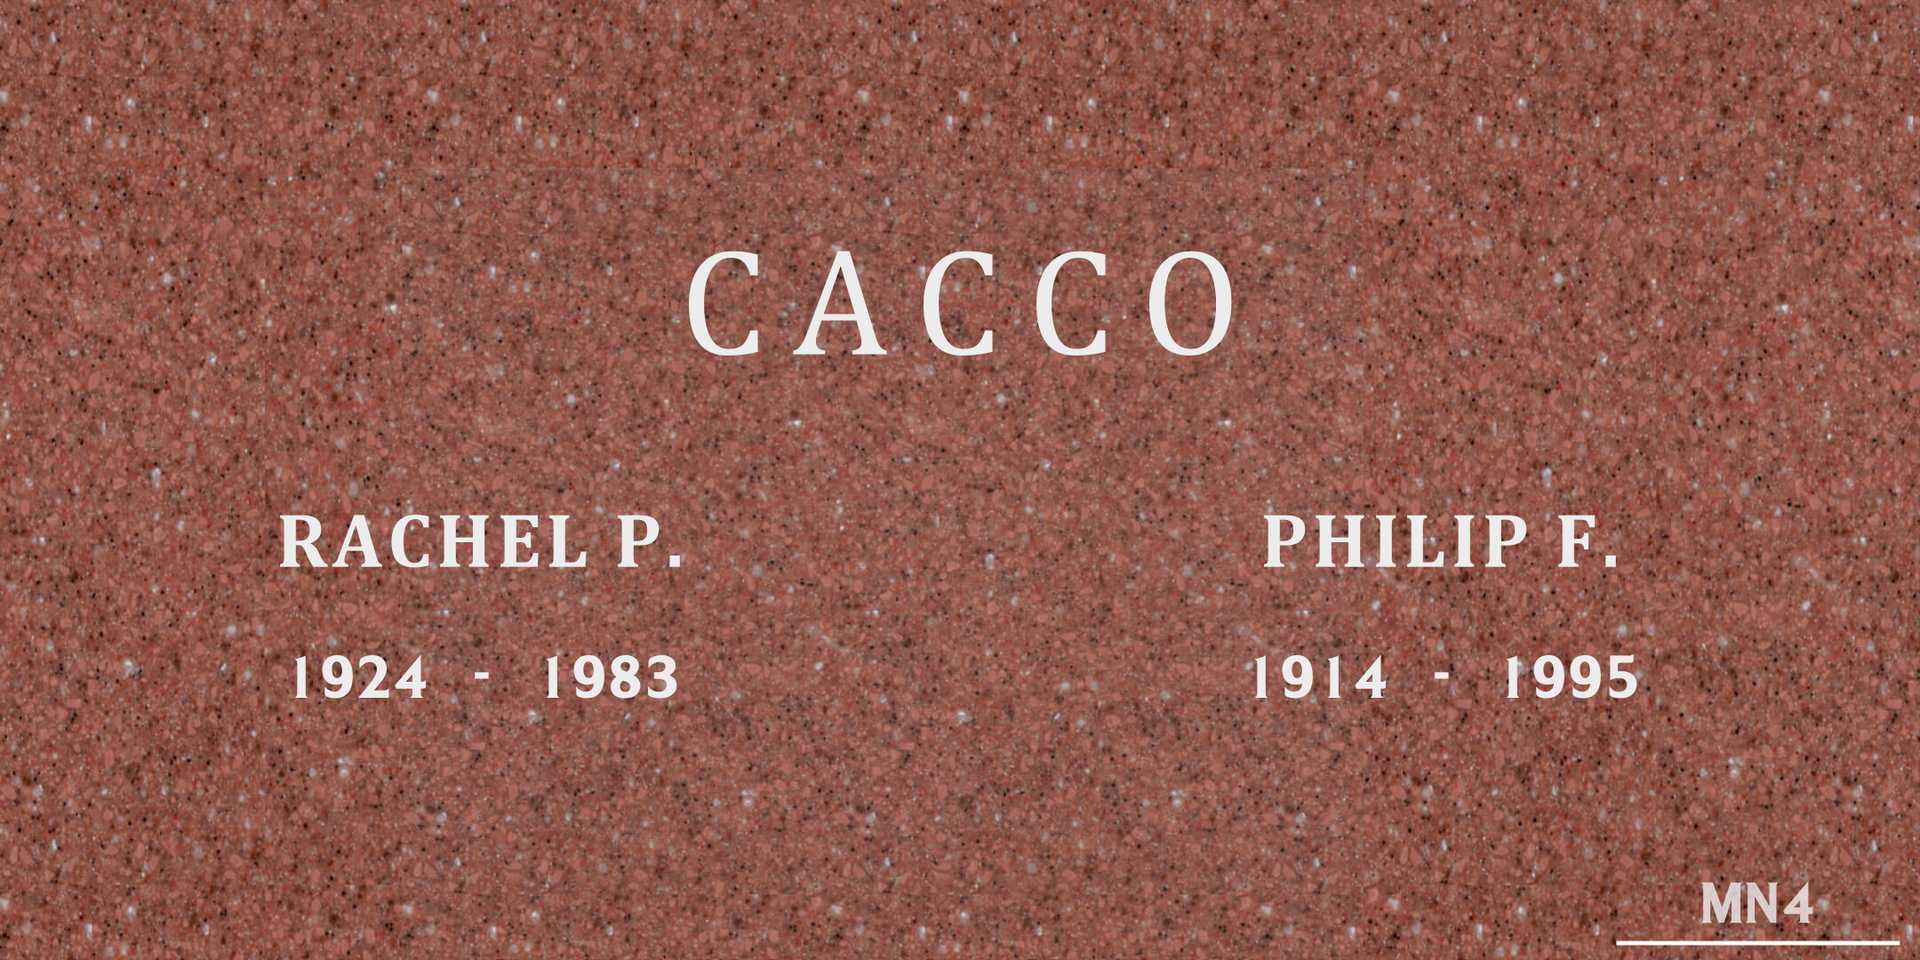 Rachel P. Cacco's grave